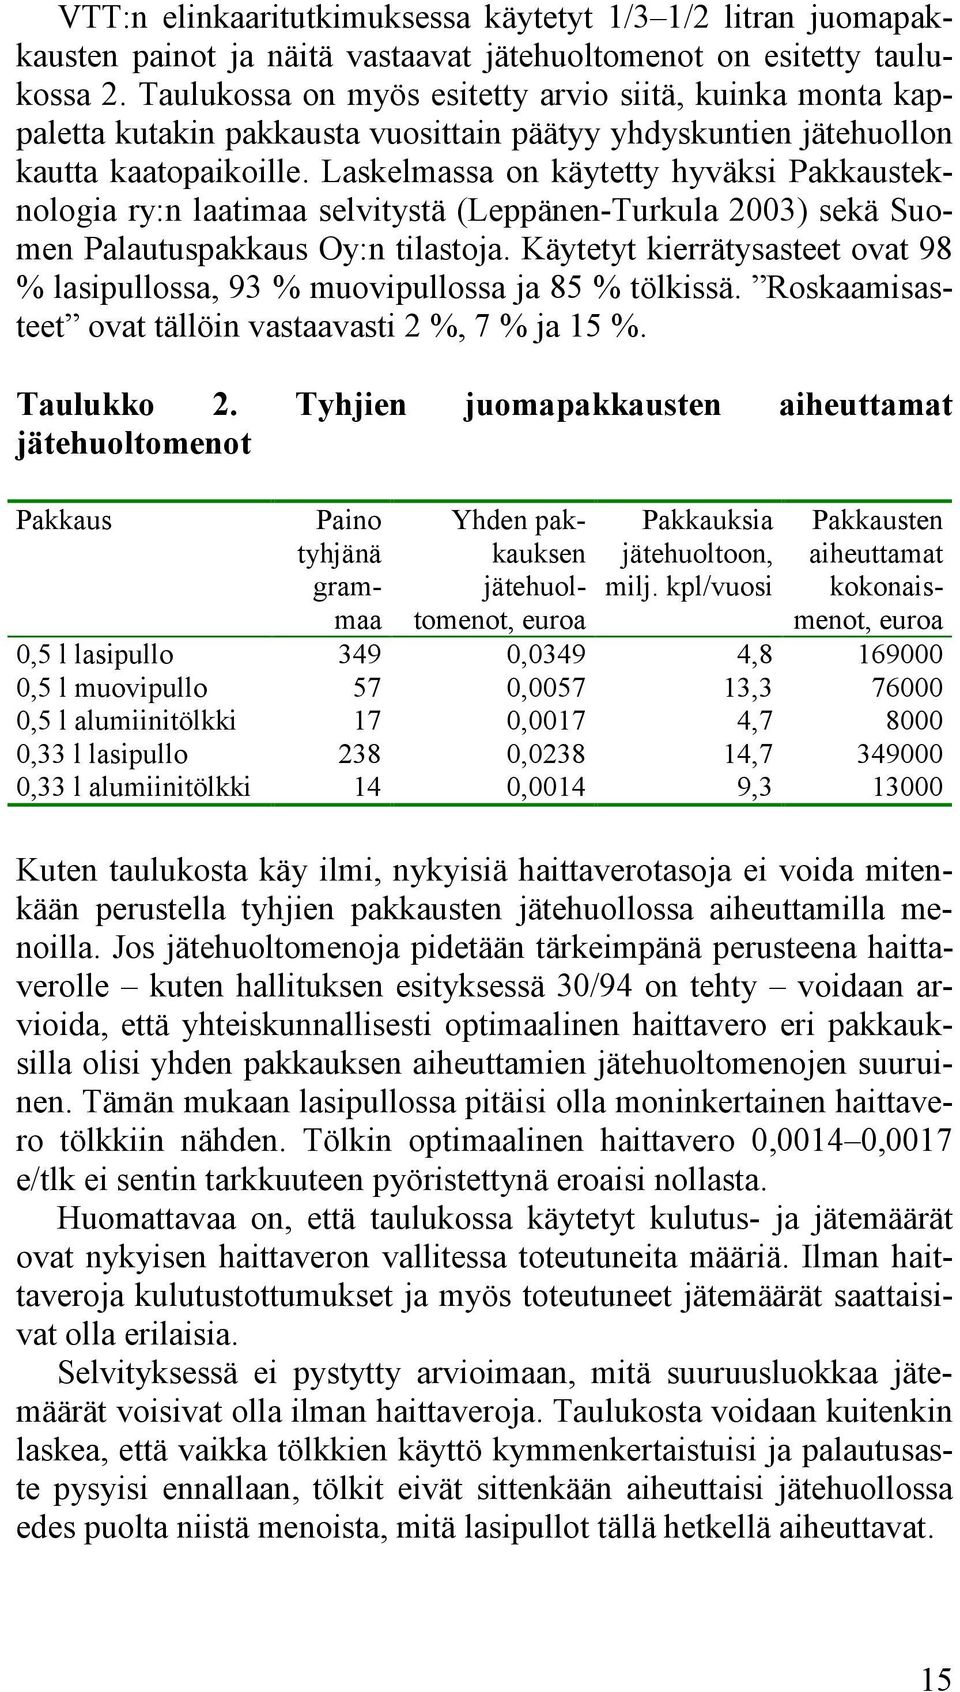 Laskelmassa on käytetty hyväksi Pakkausteknologia ry:n laatimaa selvitystä (Leppänen-Turkula 2003) sekä Suomen Palautuspakkaus Oy:n tilastoja.